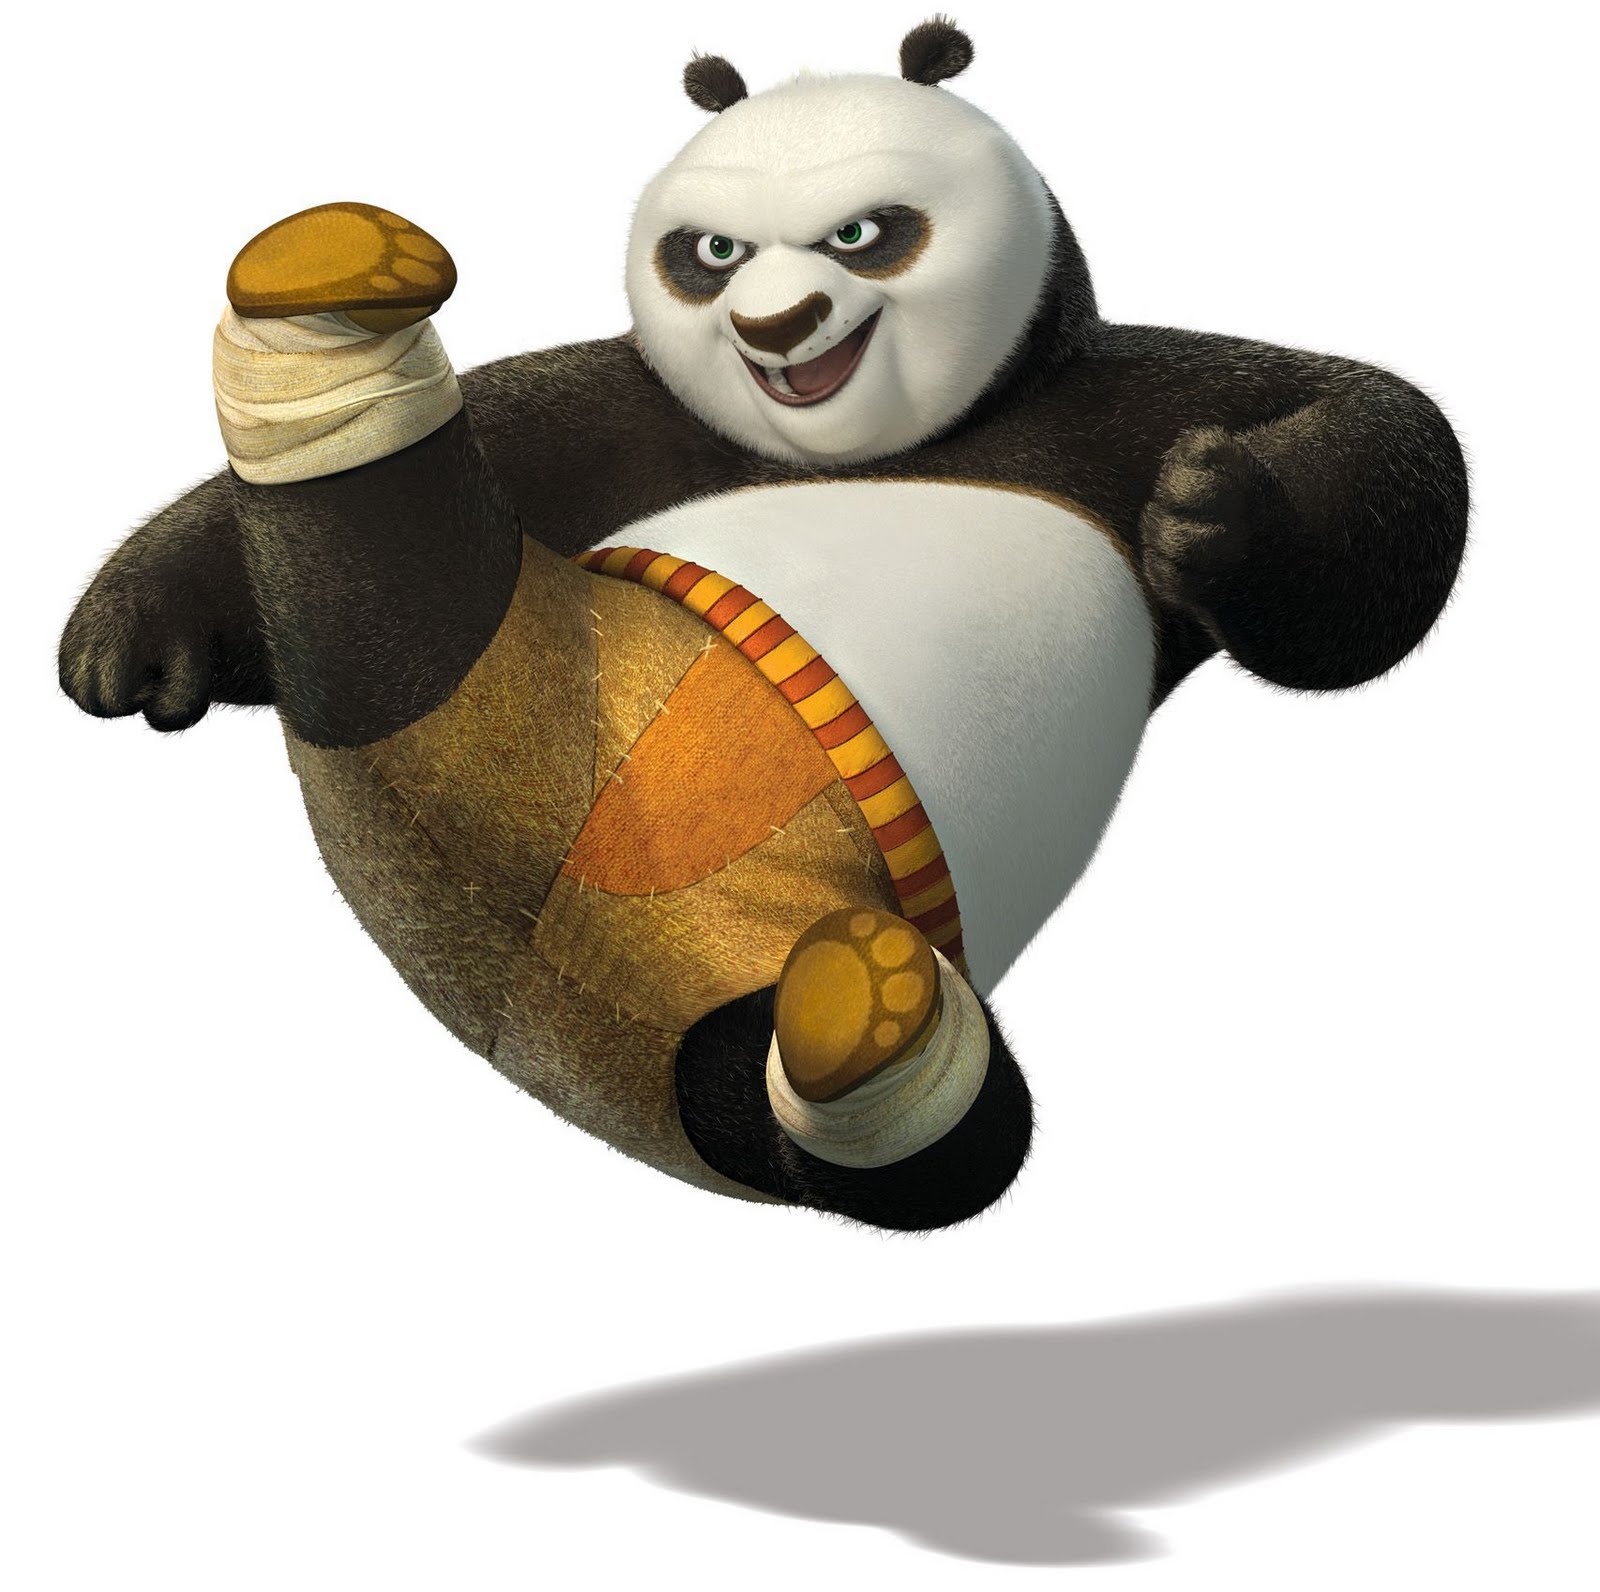 trololo blogg: Hd Wallpapers Kung Fu Panda 2